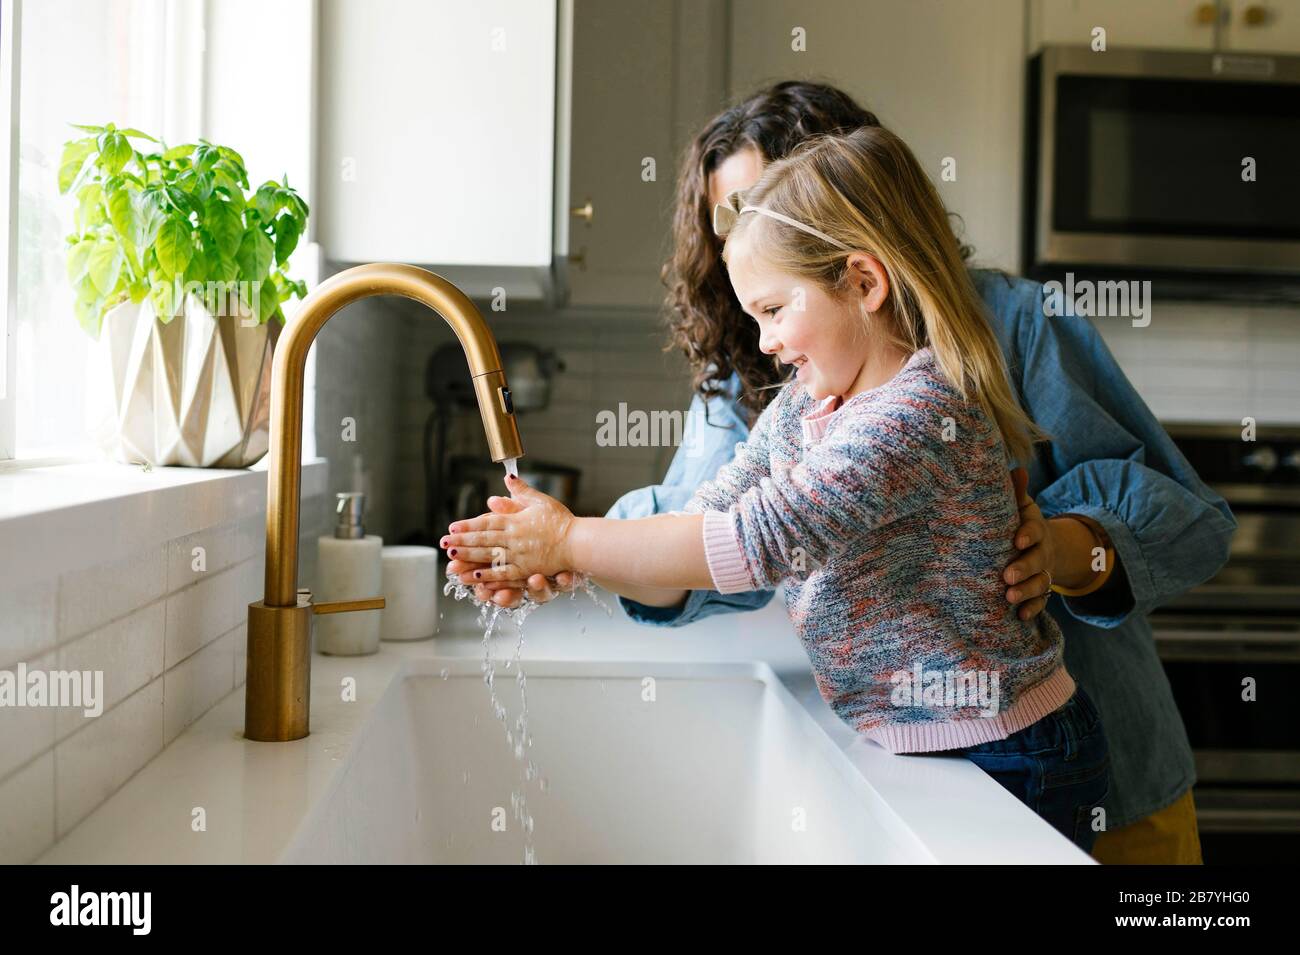 Madre e hija, en el lavado de manos en el lavabo de la cocina Foto de stock